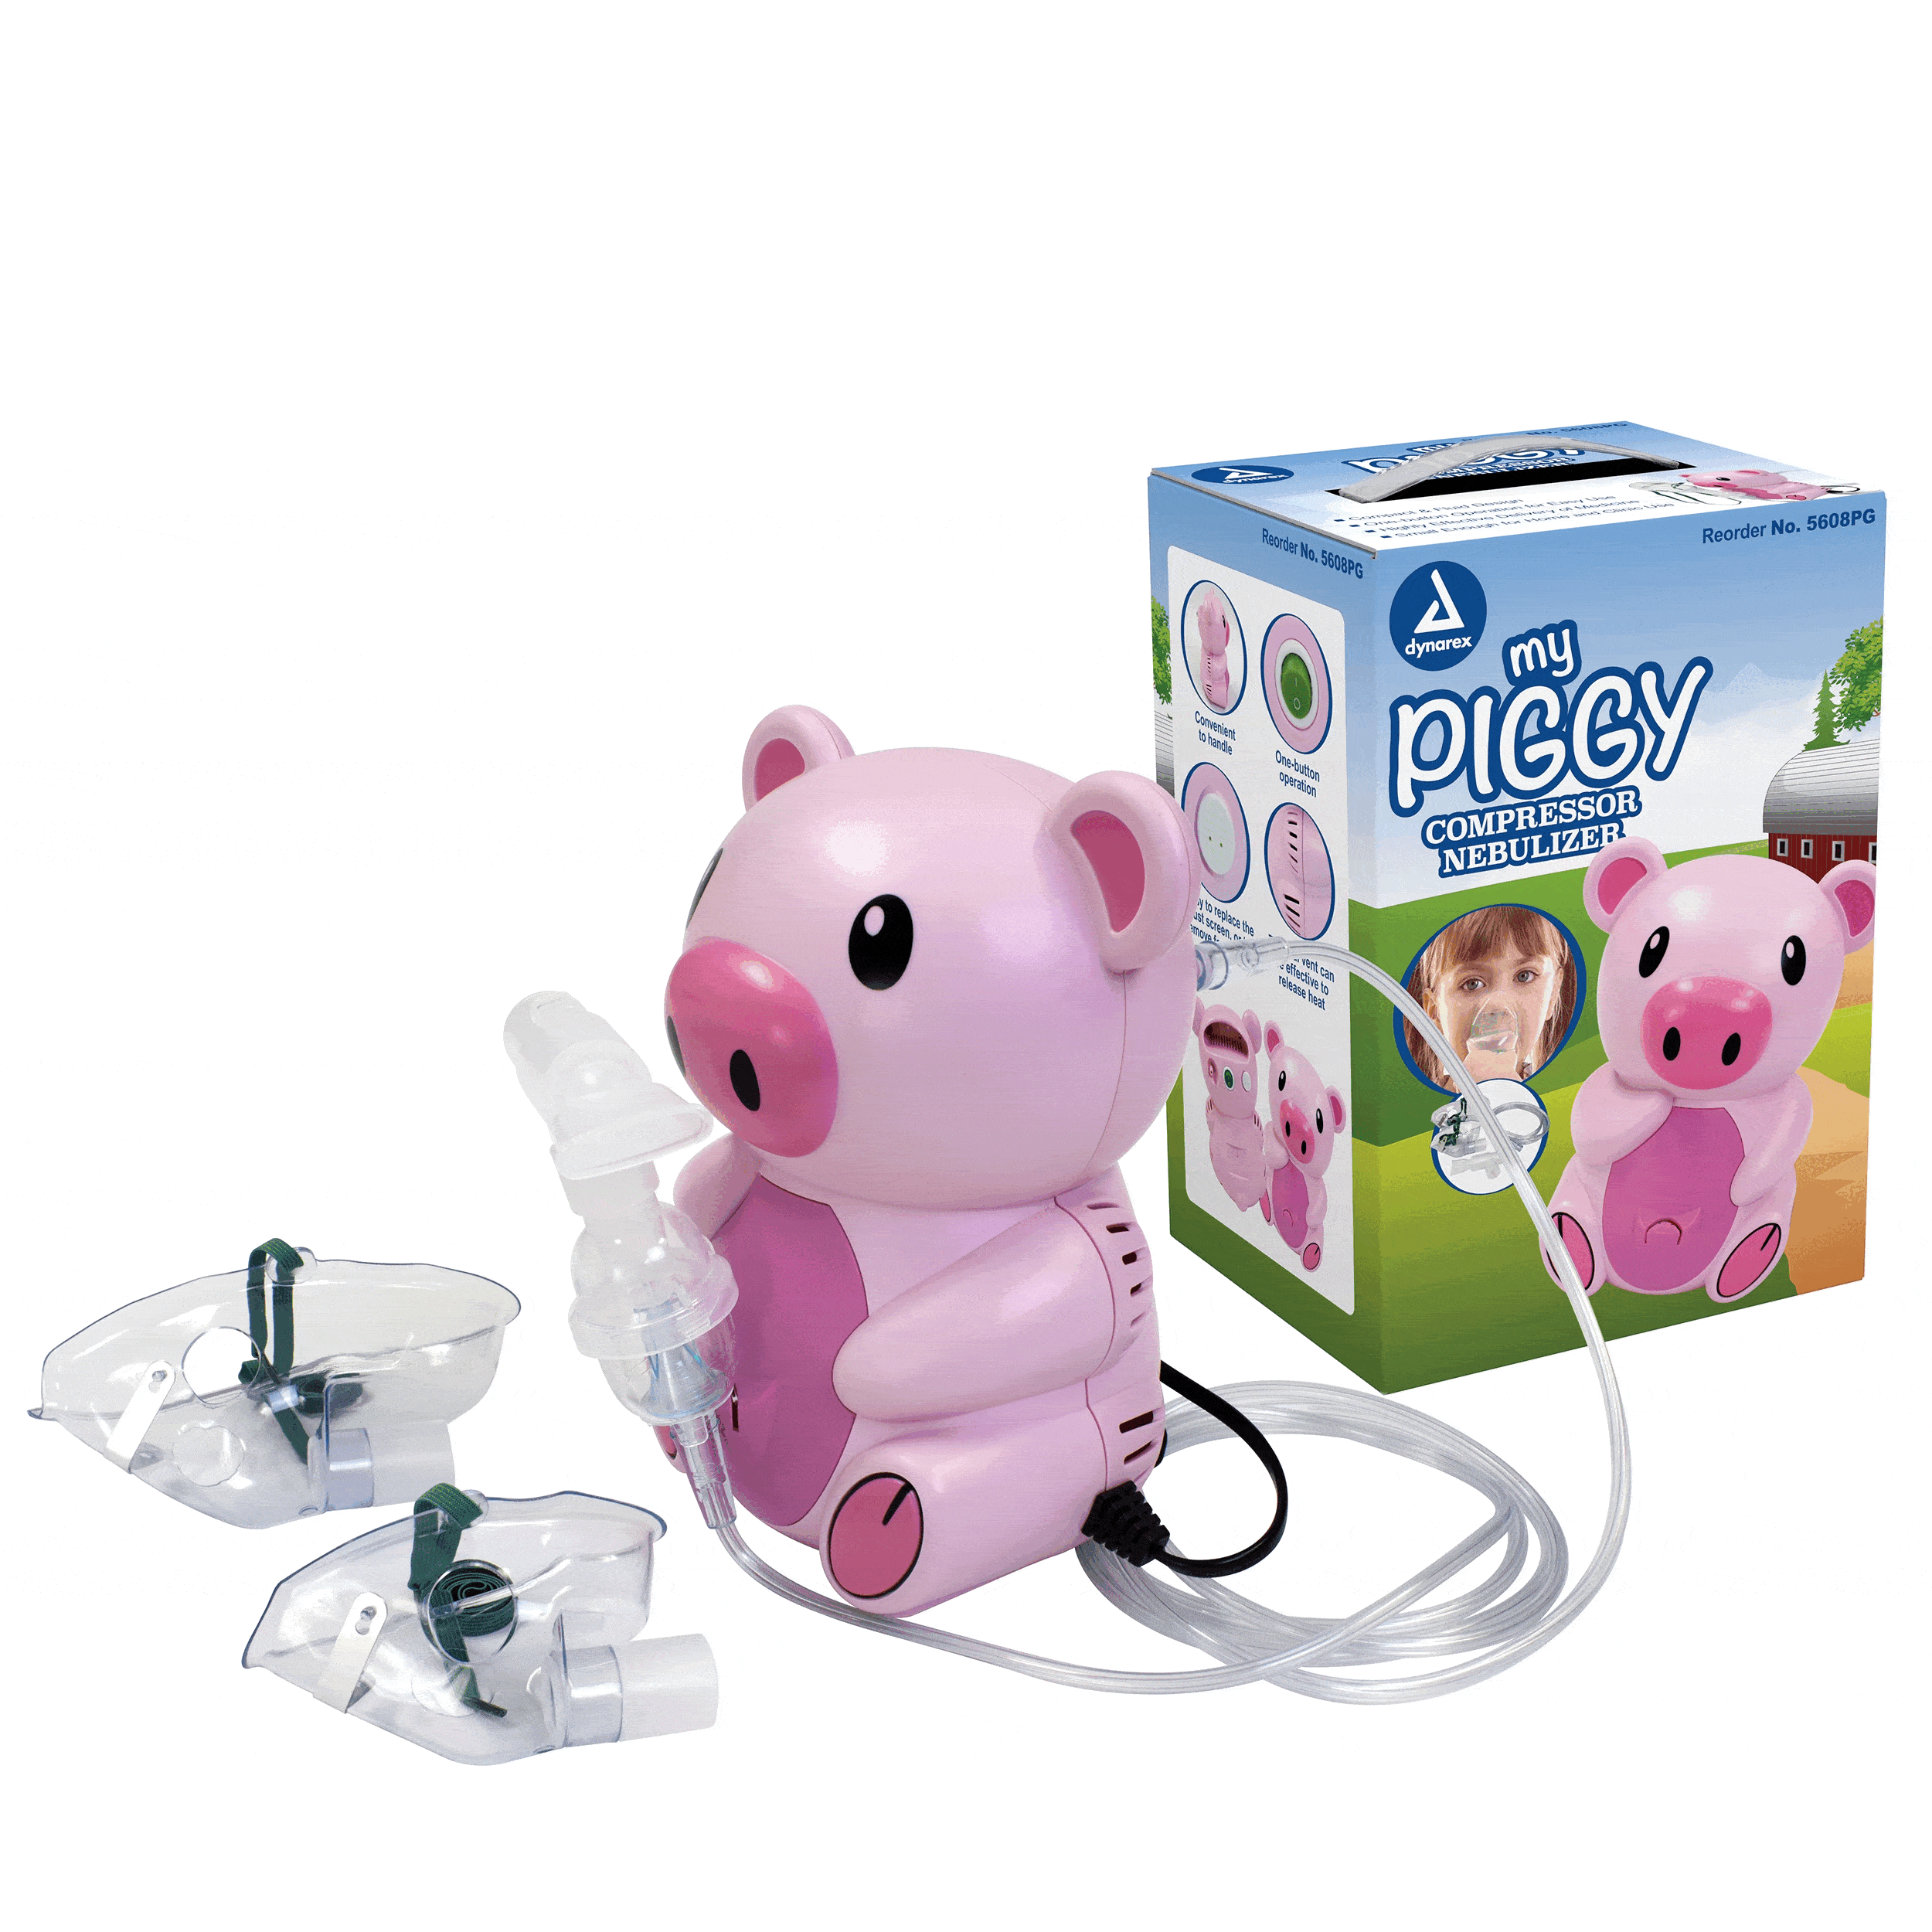 Pediatric Nebulizer, Piggy, Case (34404)